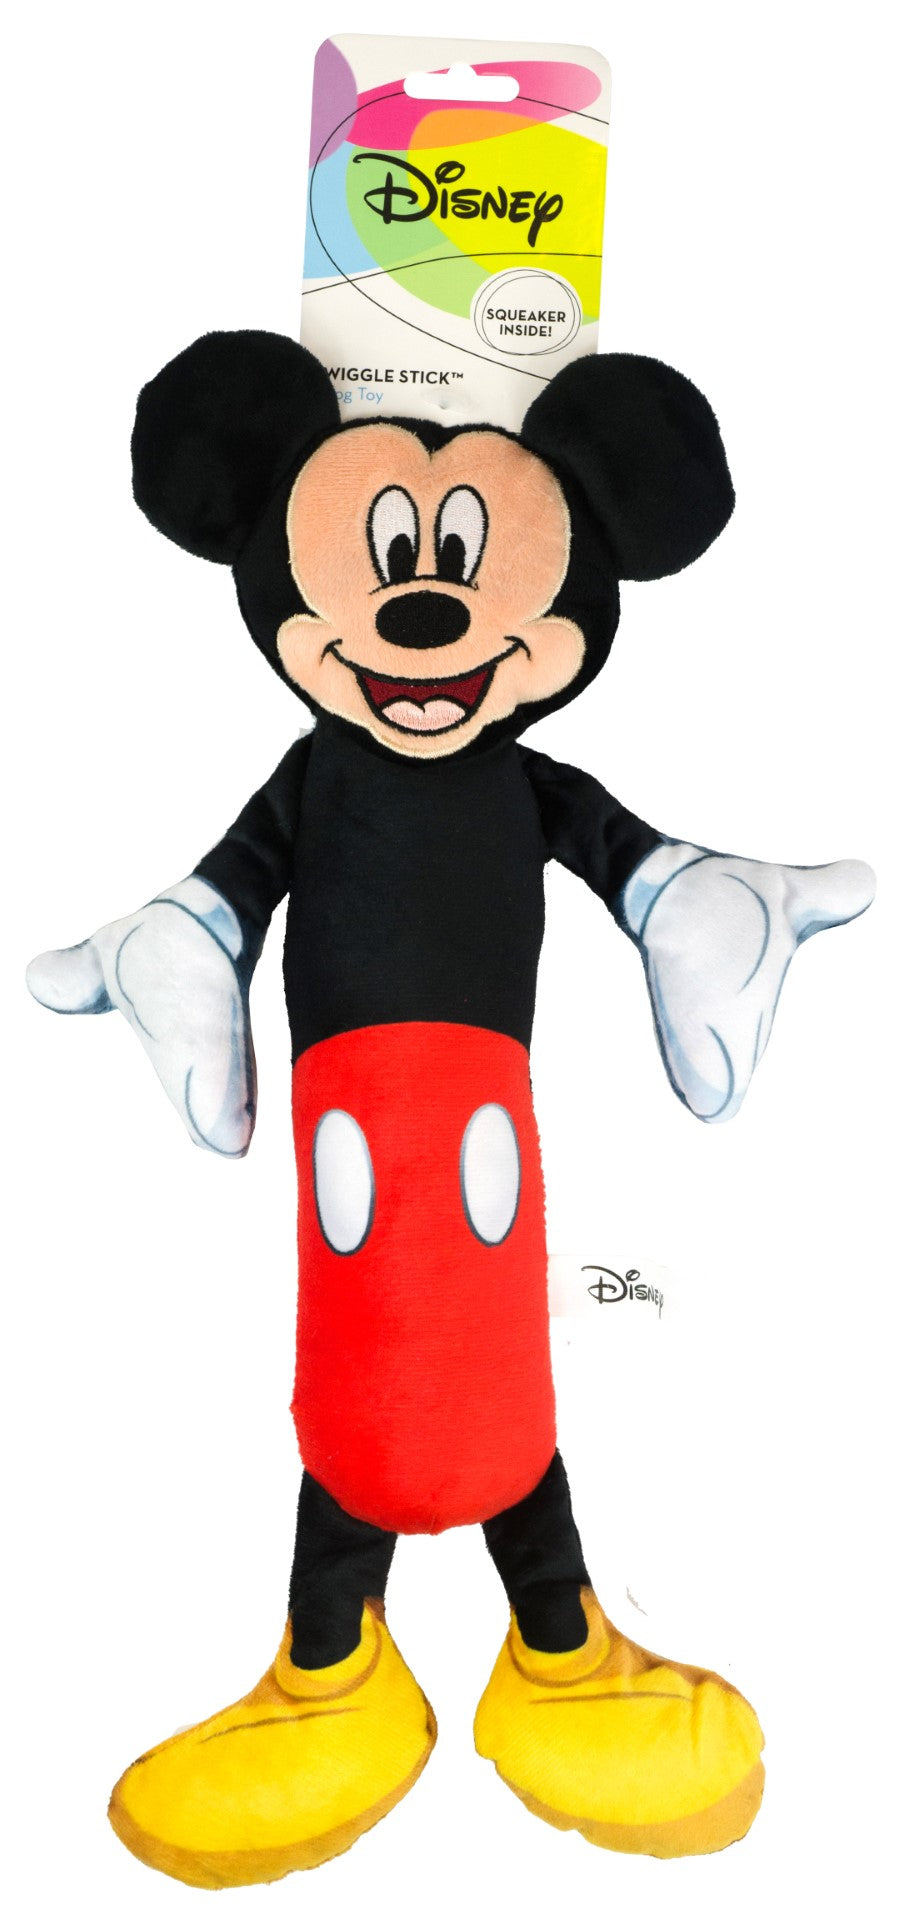 Disney Plush Toy Mickey Mouse